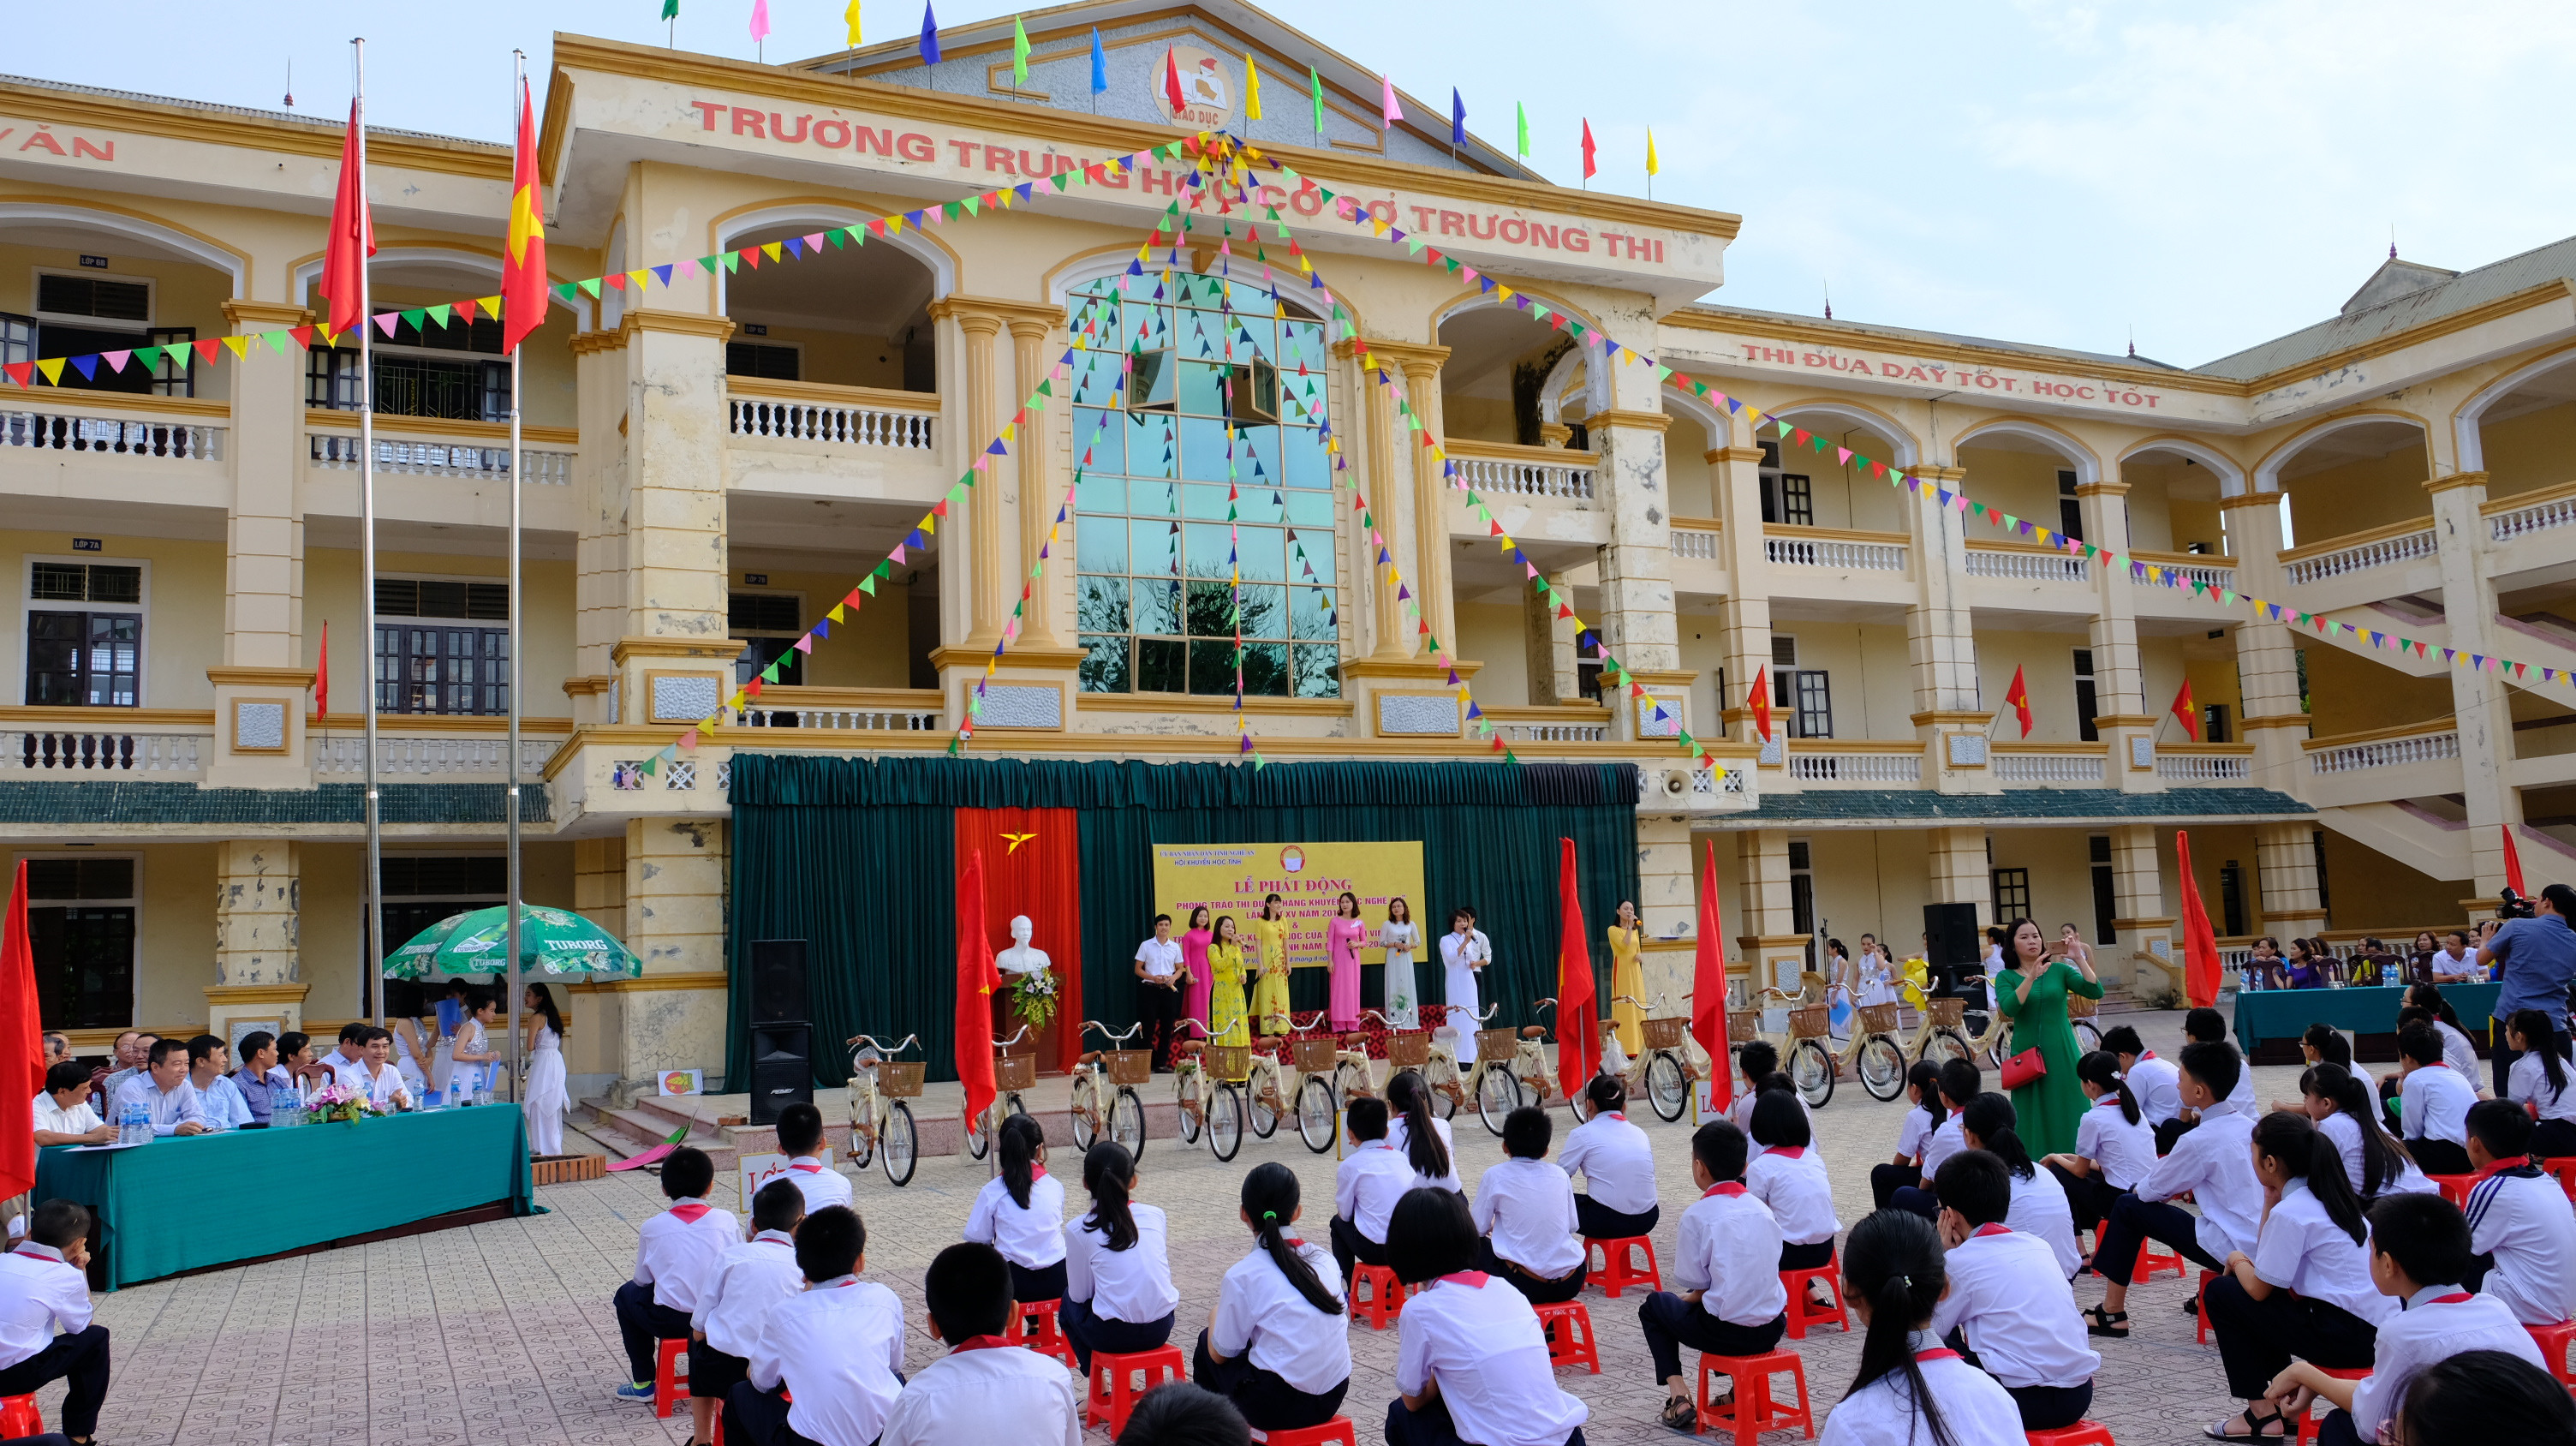 Lễ phát động Tháng Khuyến học năm học 2018 - 2019 được tổ chức tại Trường THCS Trường Thi - thành phố Vinh. Ảnh: Mỹ Hà